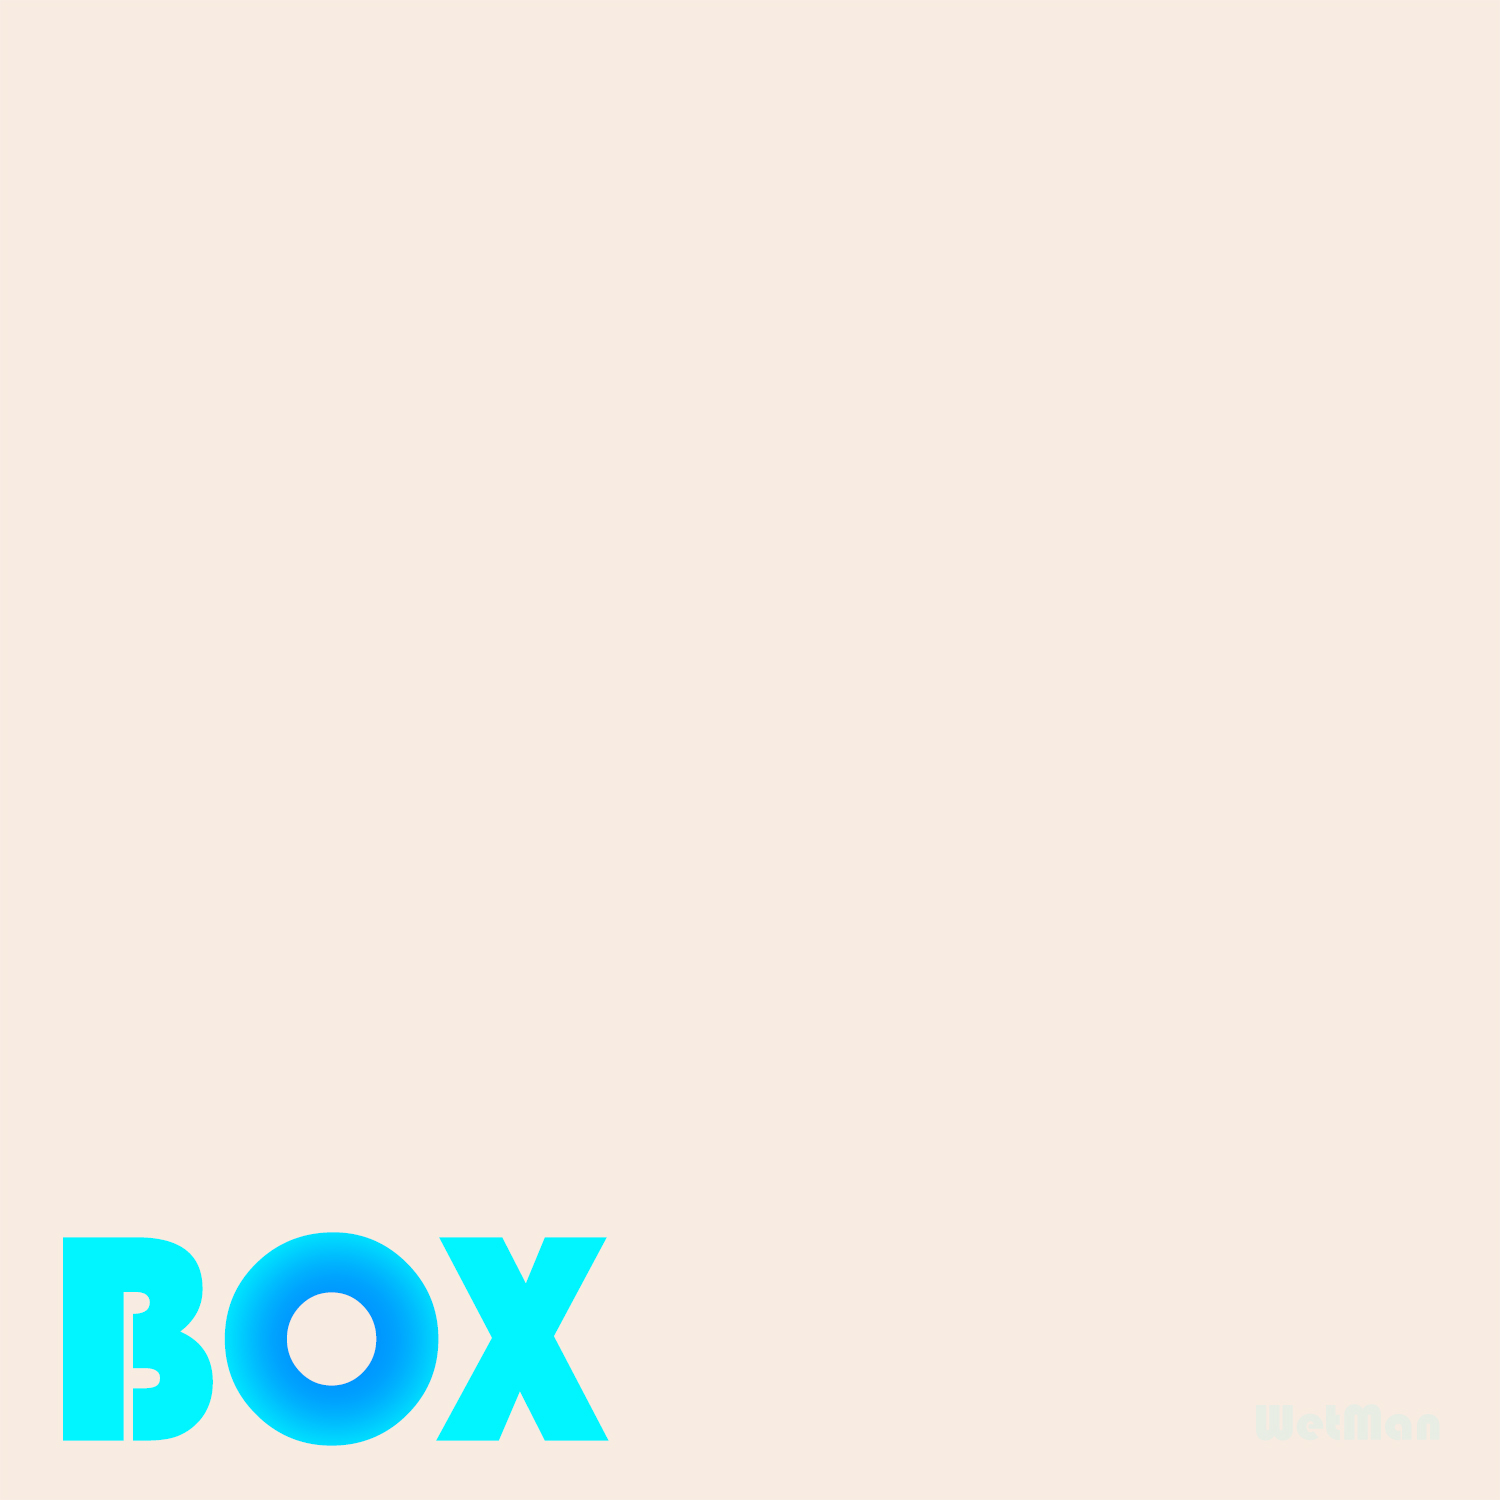 Box album cover